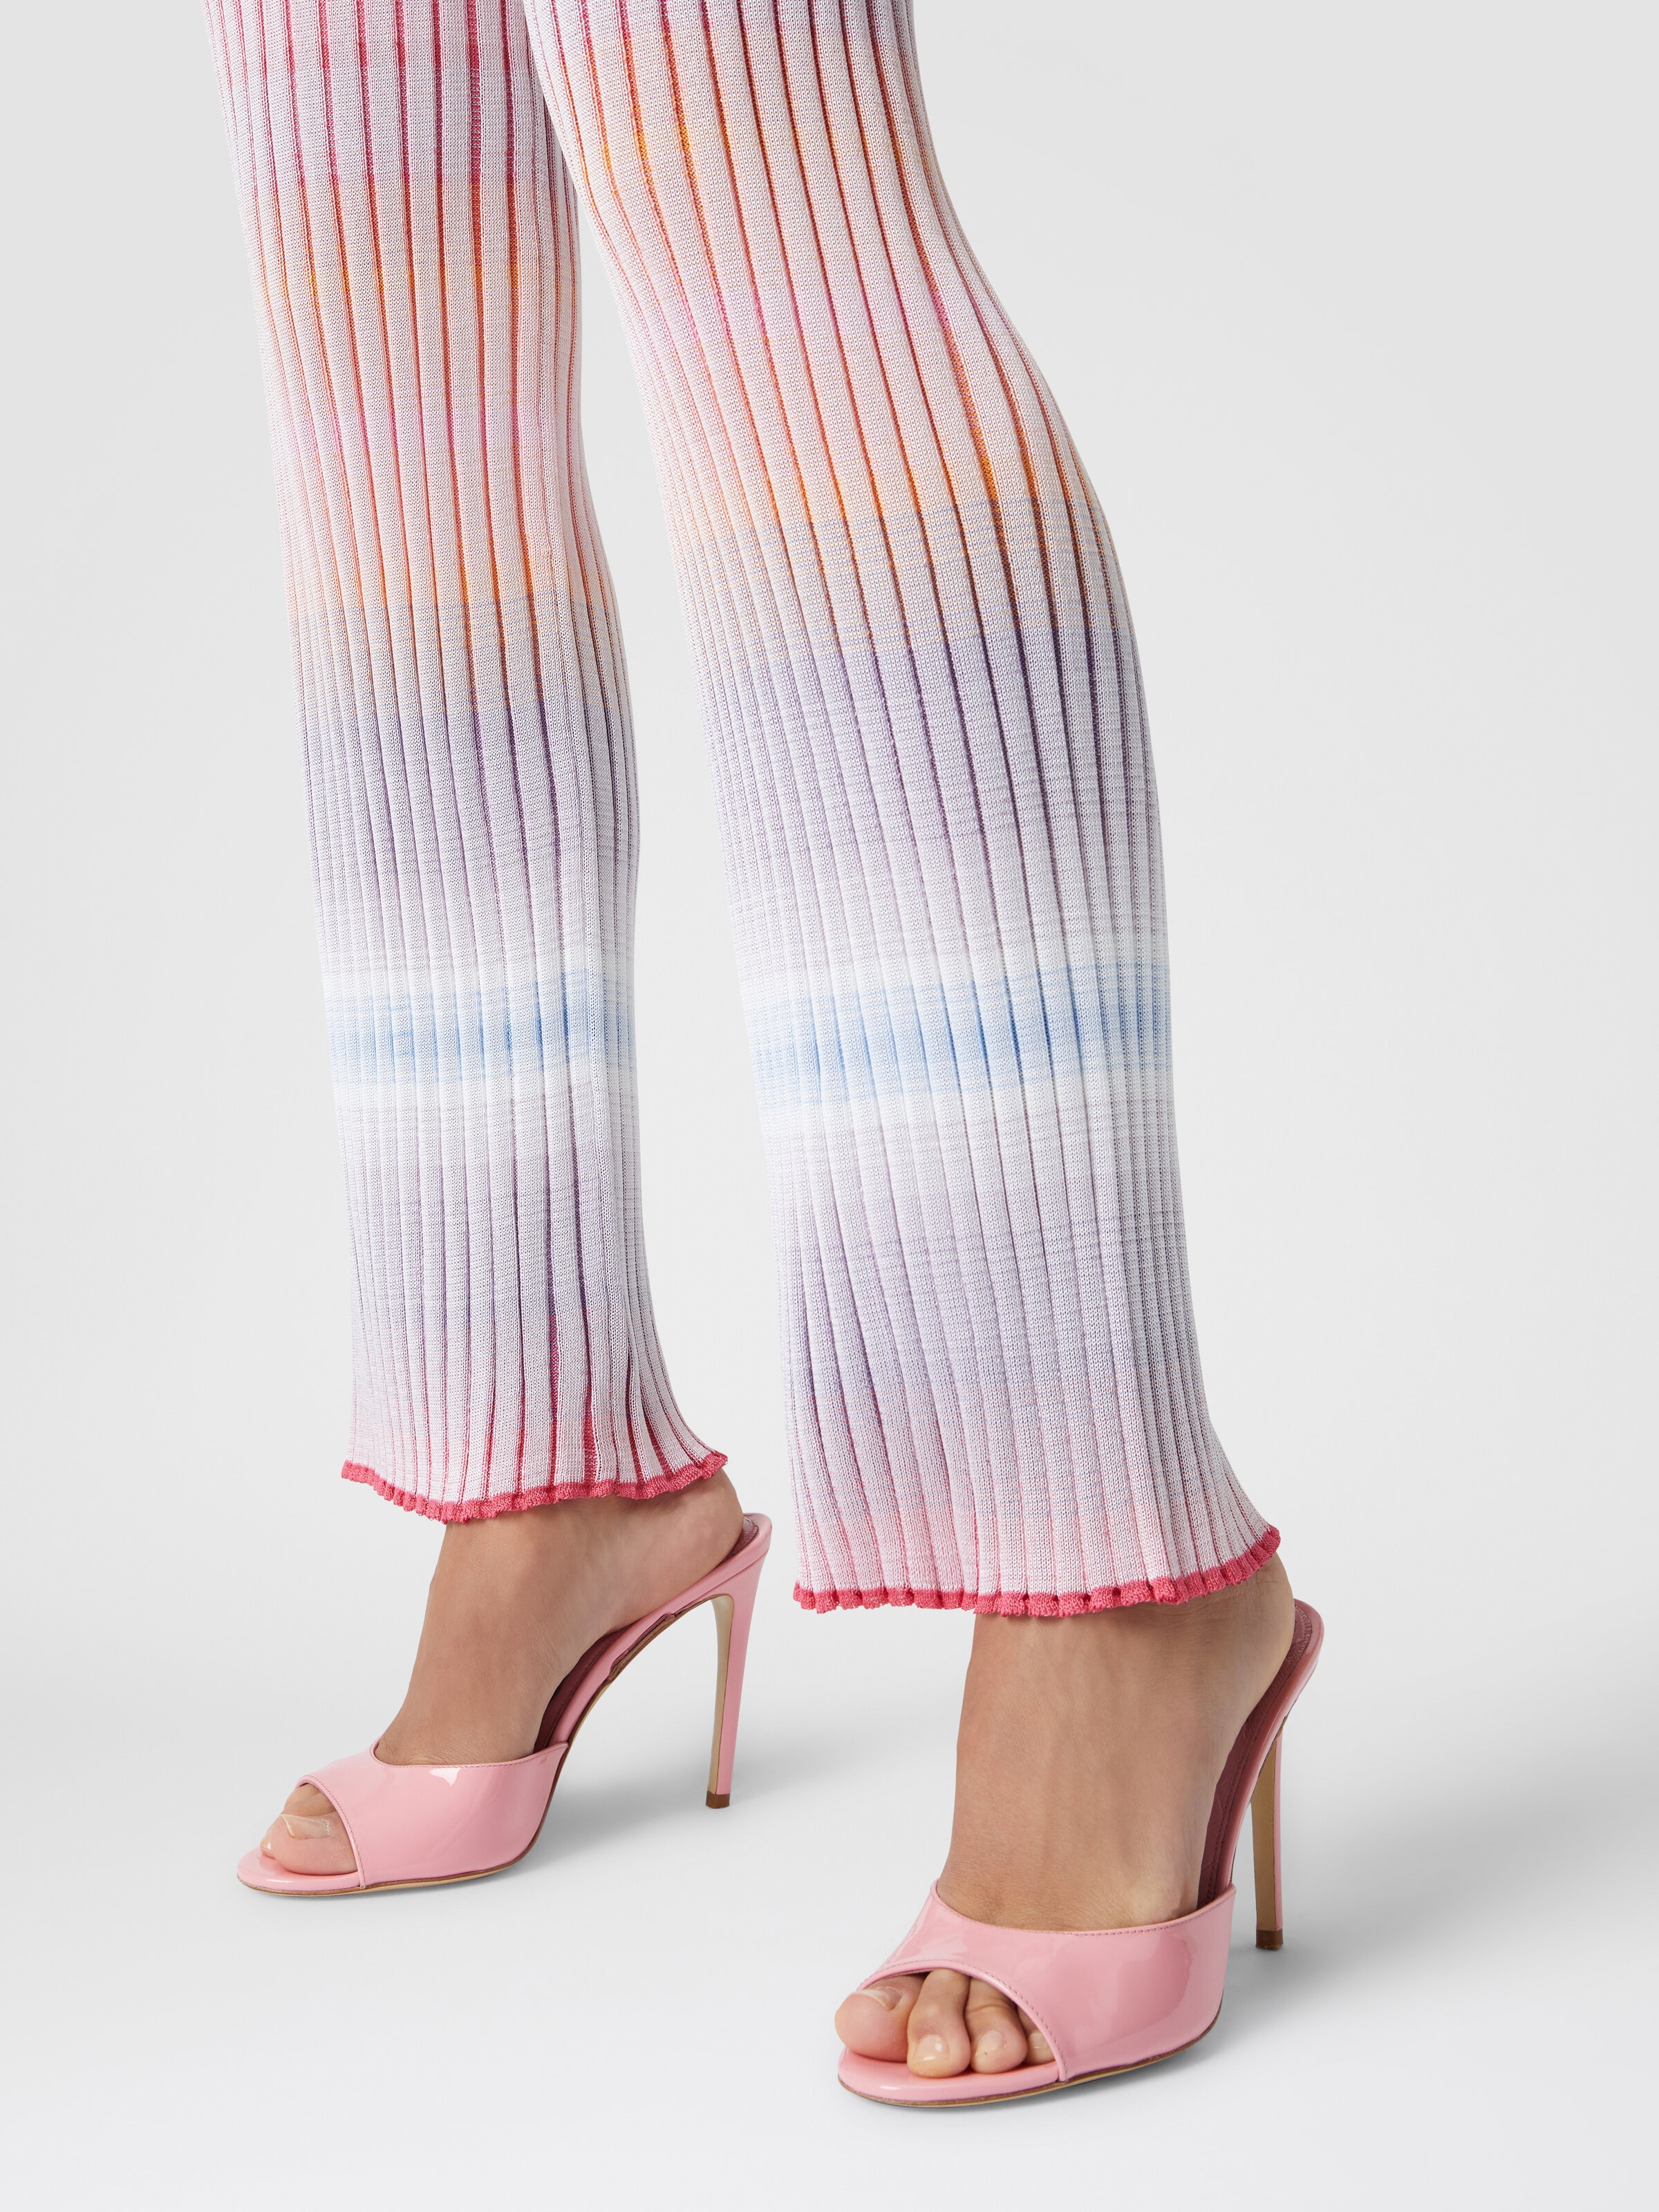 Pantalon droit en viscose à mailles côtelées, Multicolore  - 4